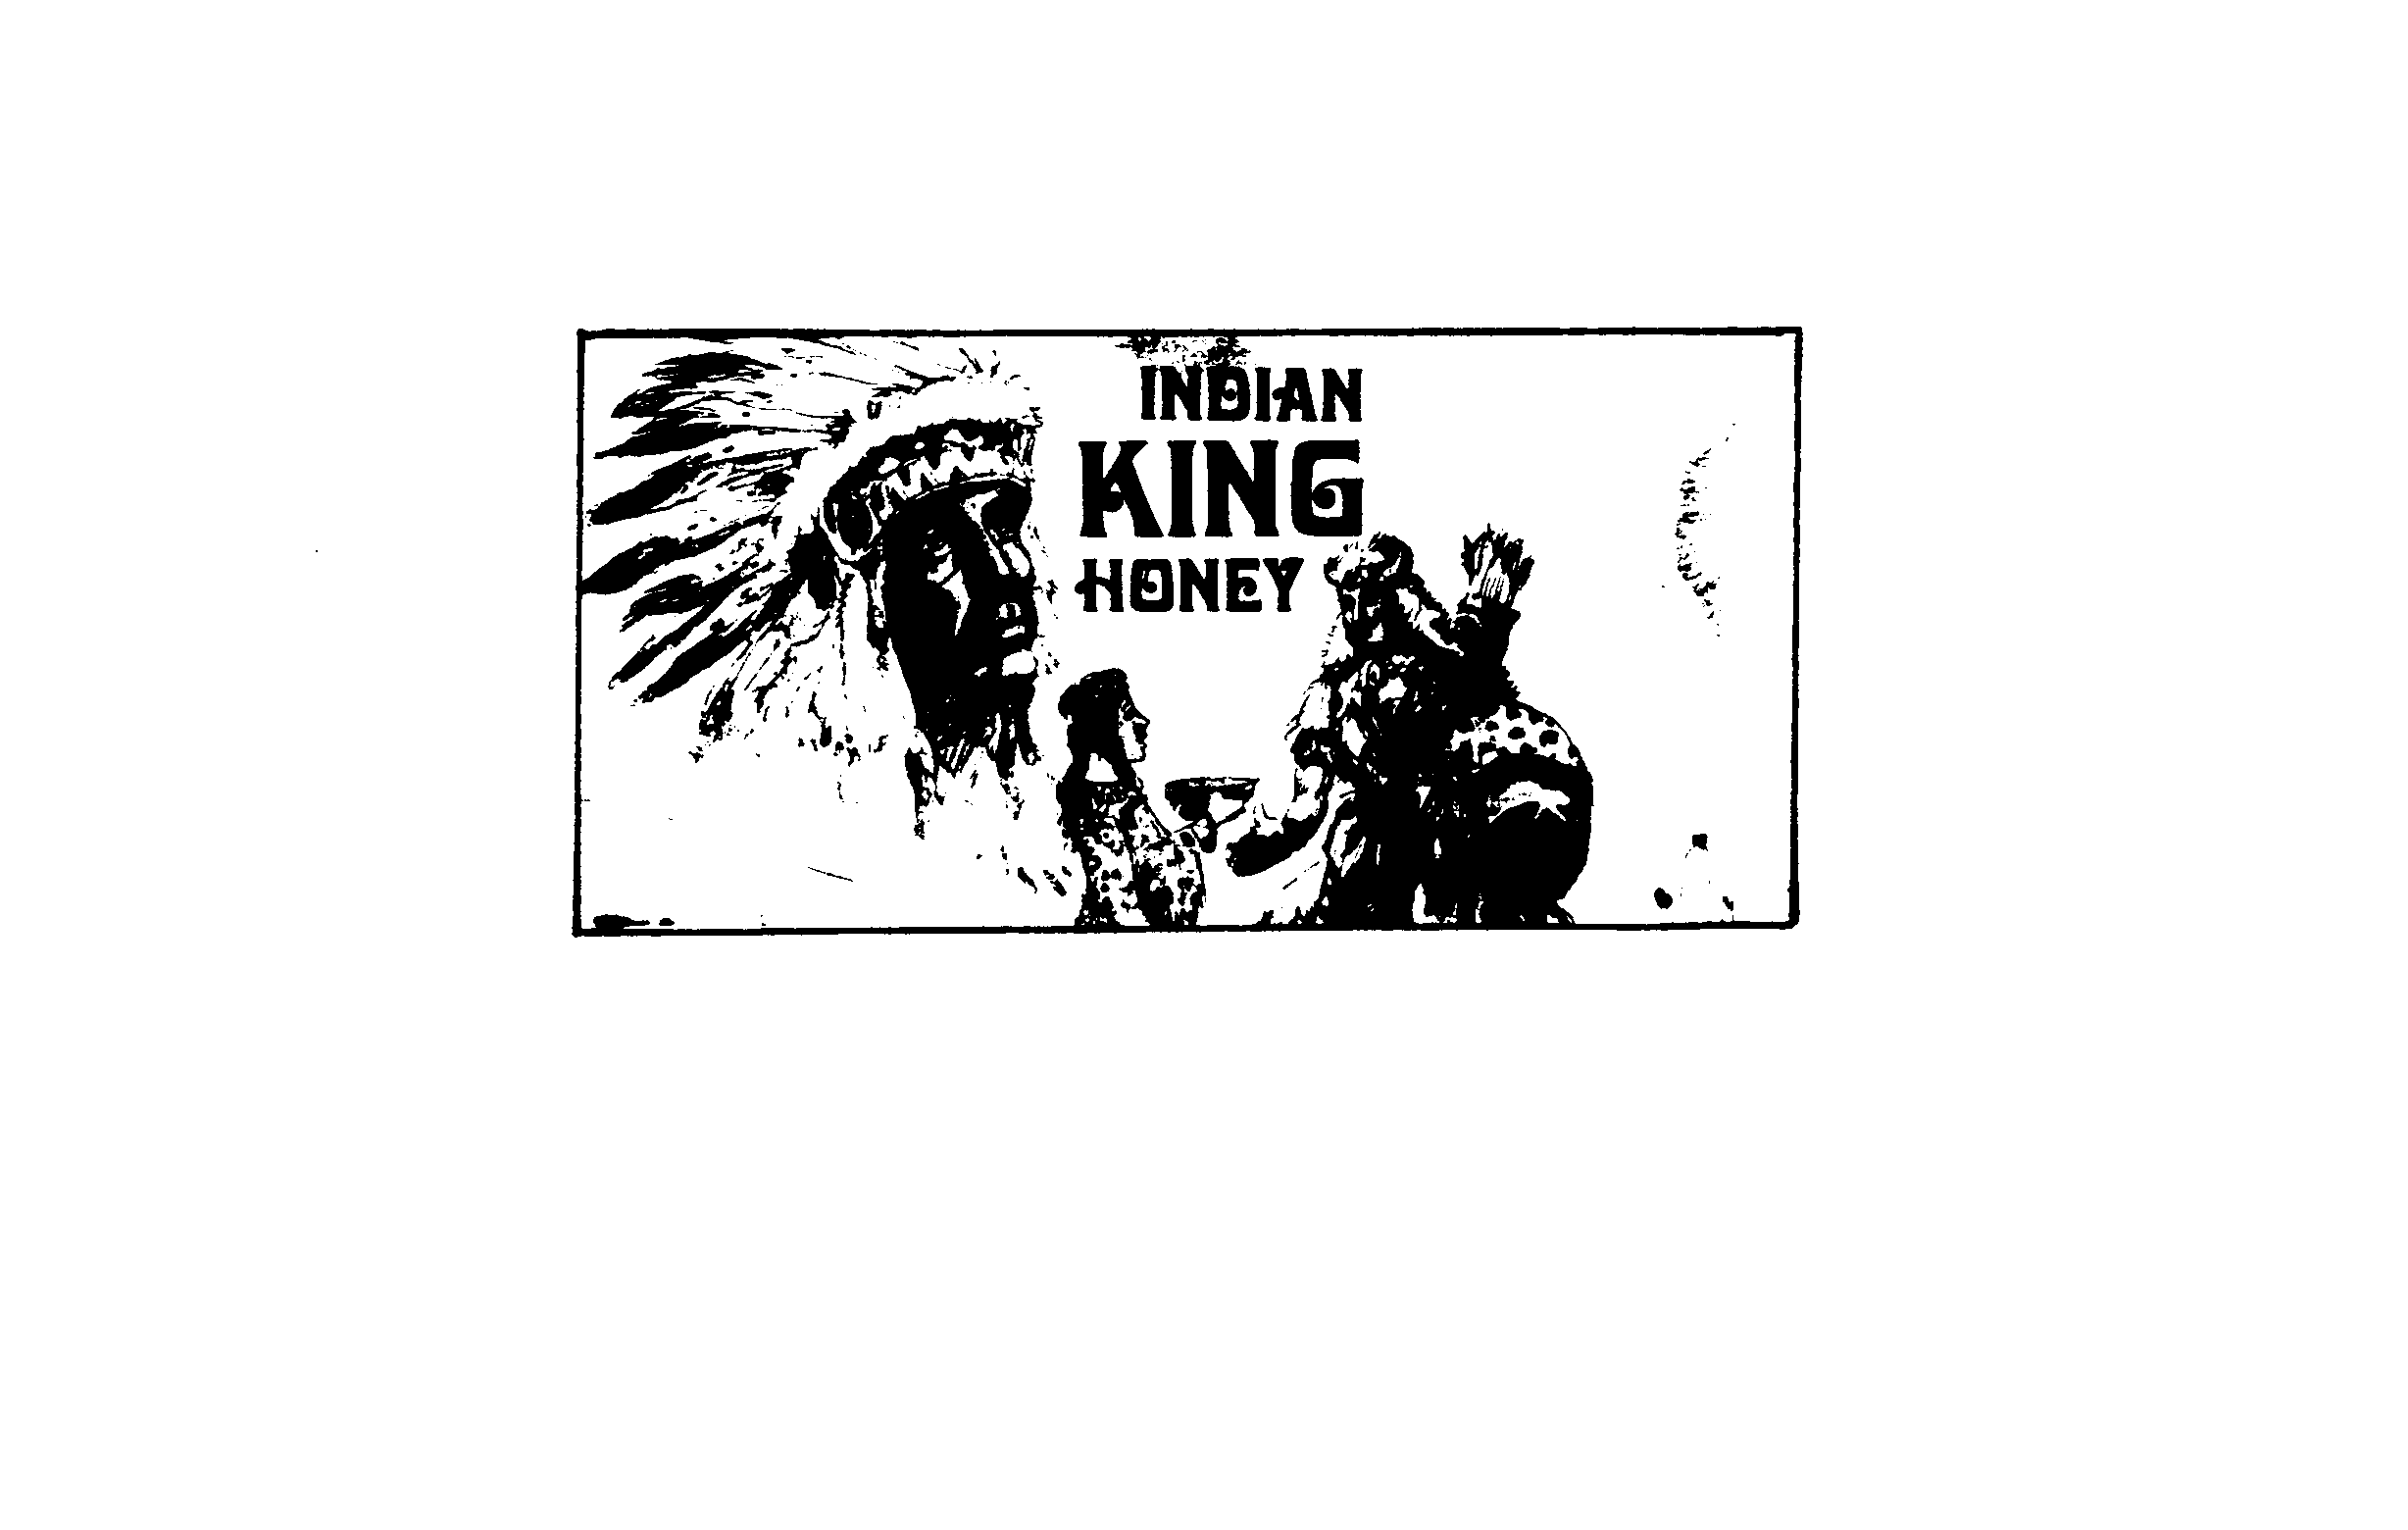  INDIAN KING HONEY